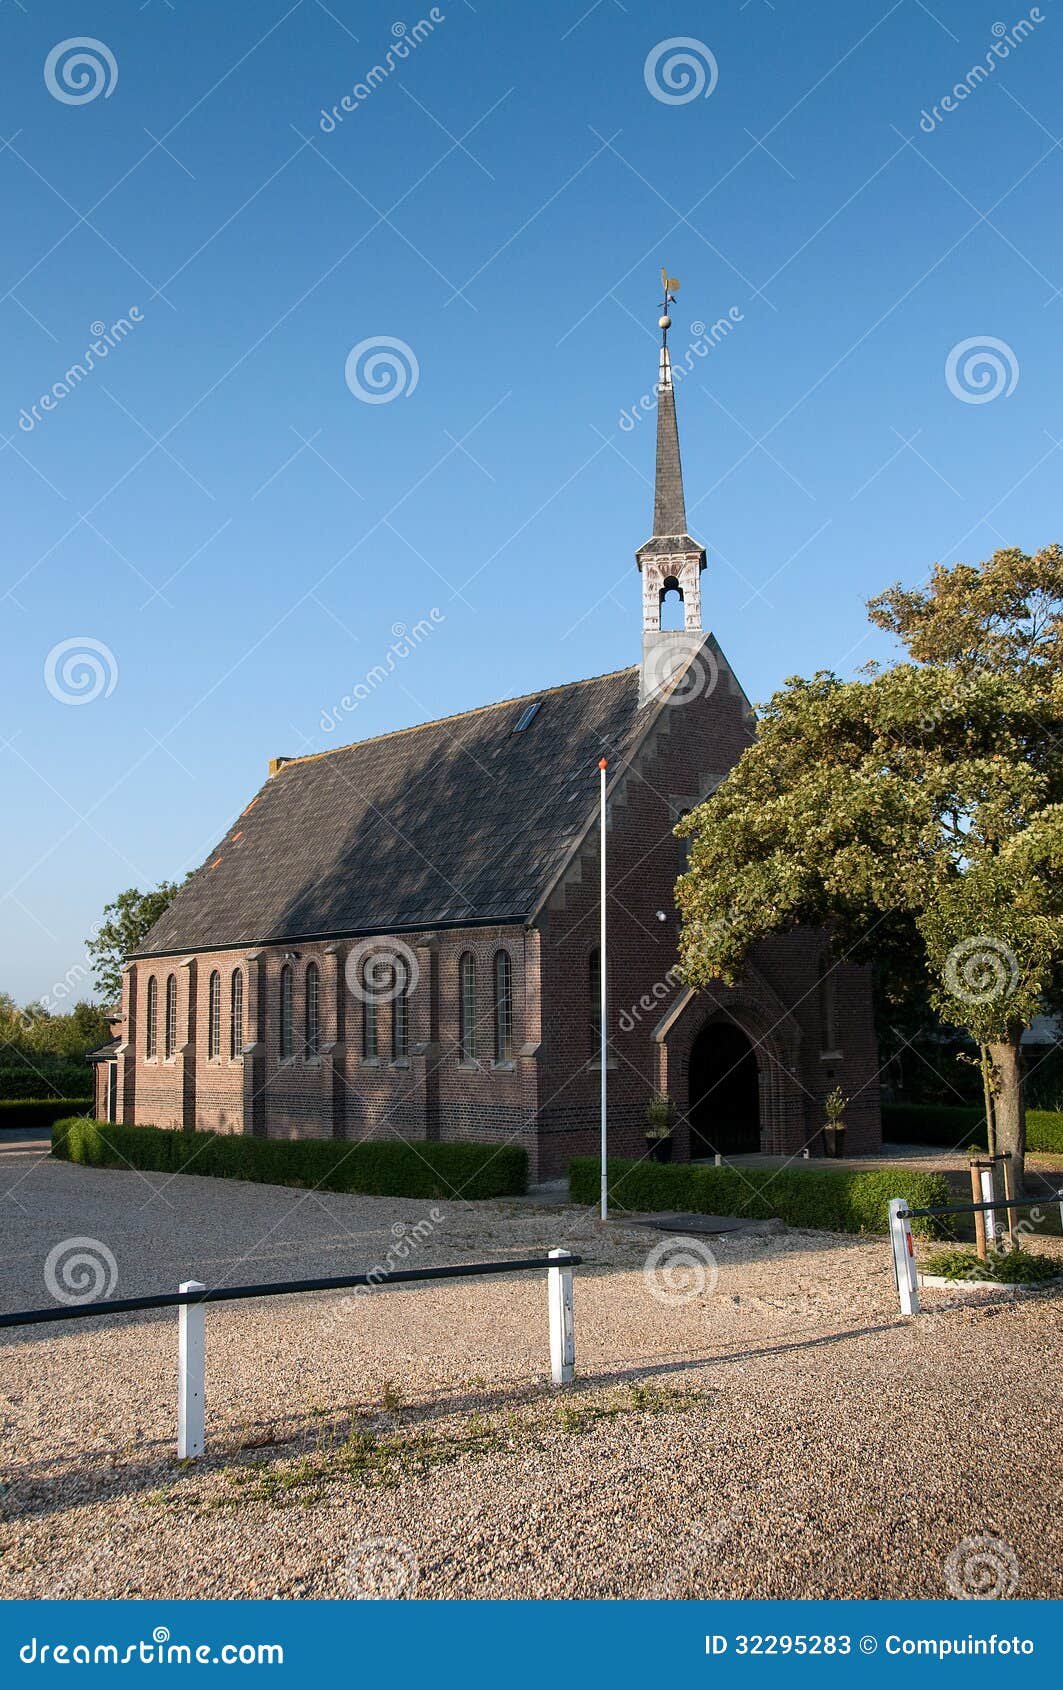 church in tinte holland